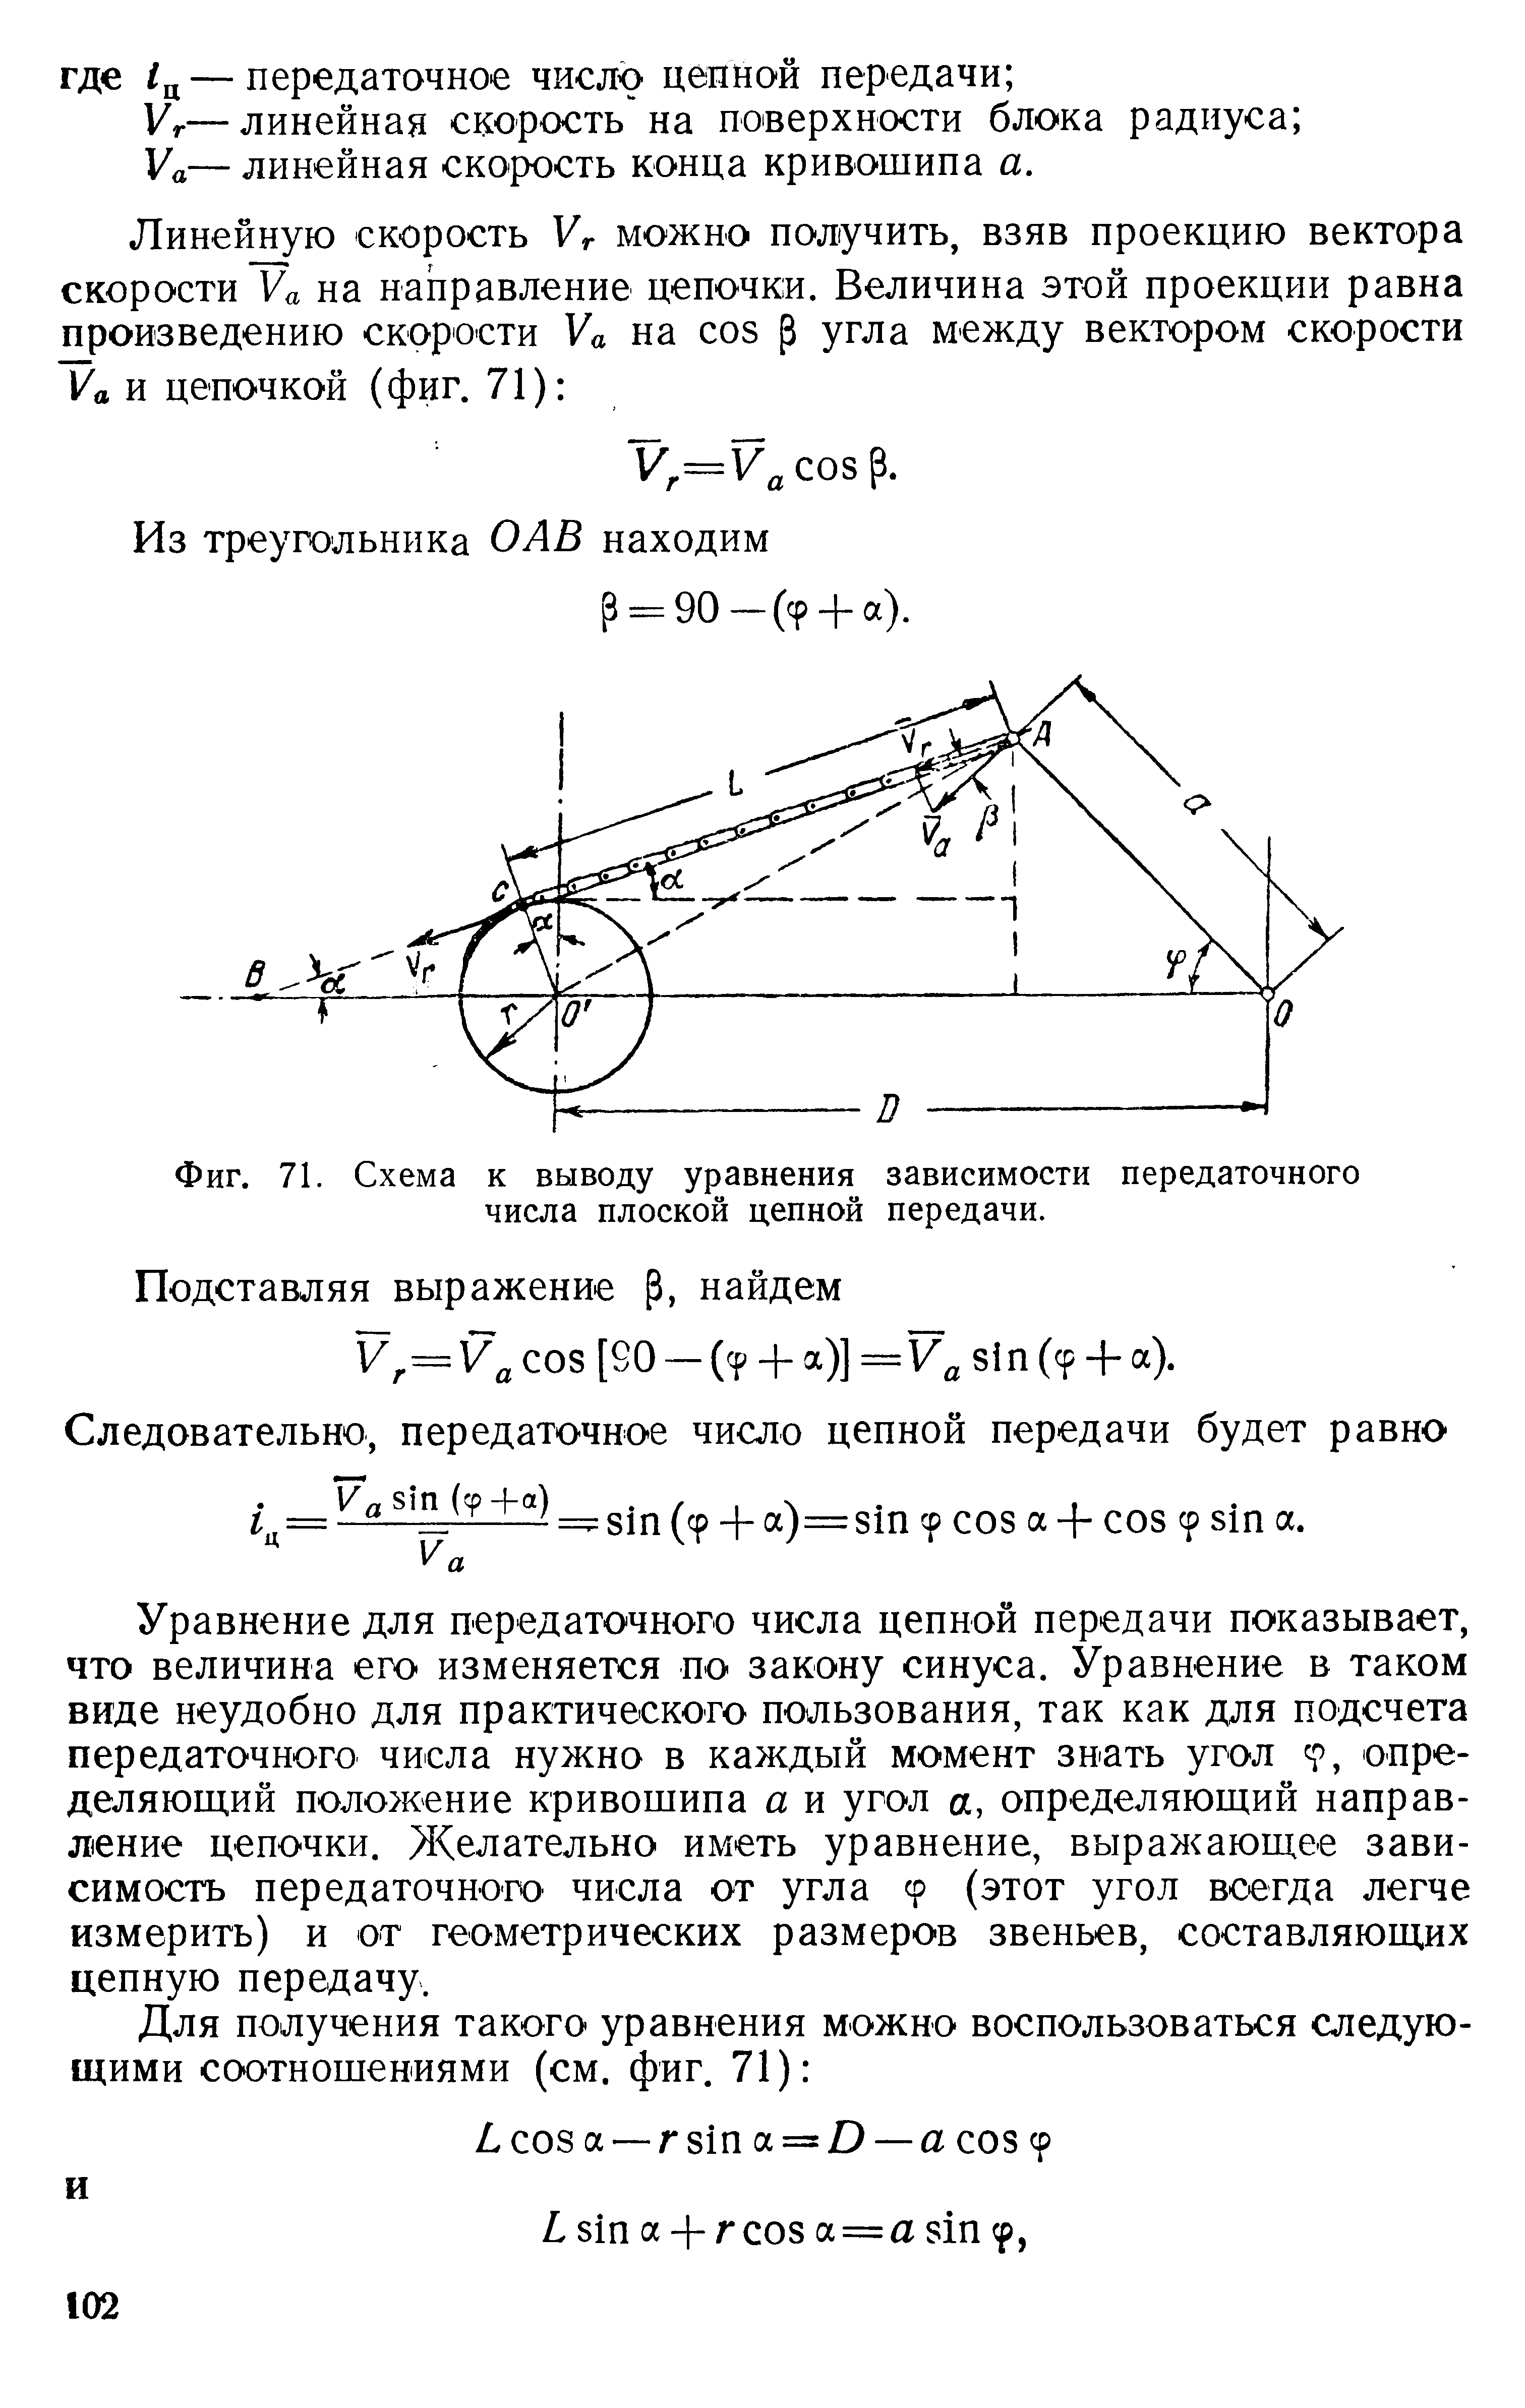 Фиг. 71. Схема к выводу уравнения зависимости передаточного числа плоской цепной передачи.
